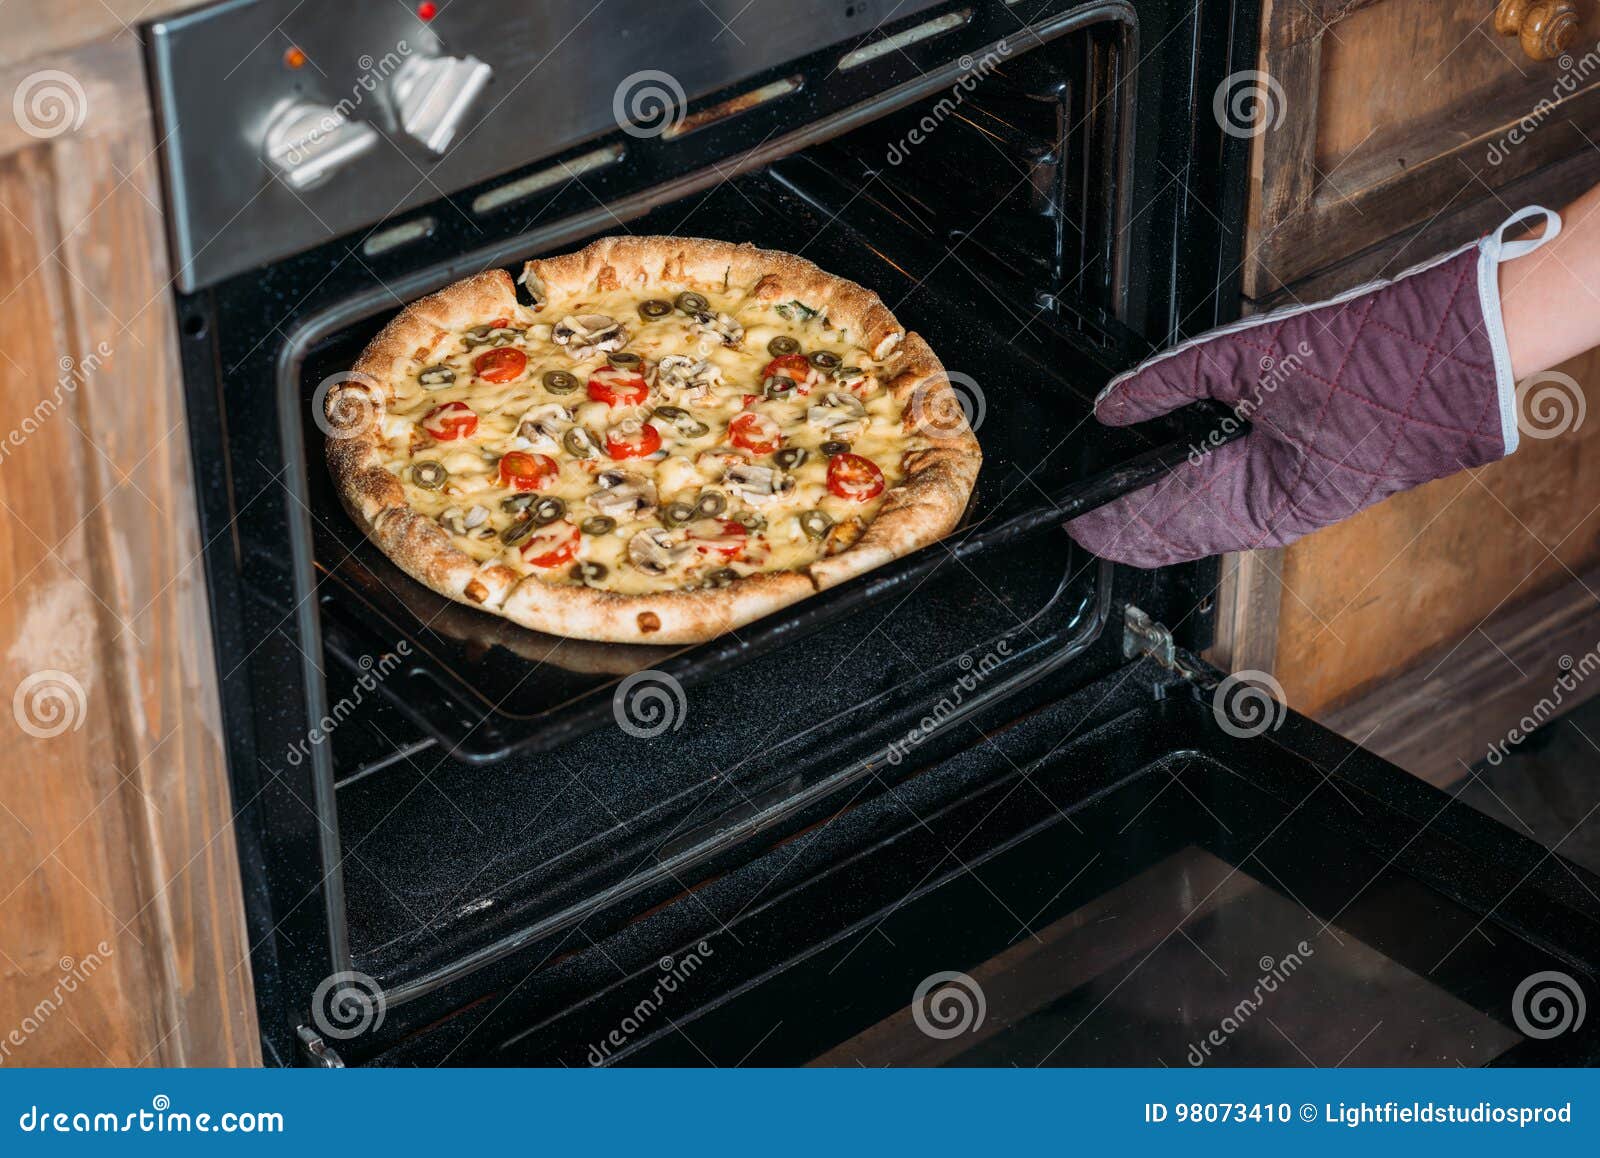 как положить пиццу в духовке фото 4